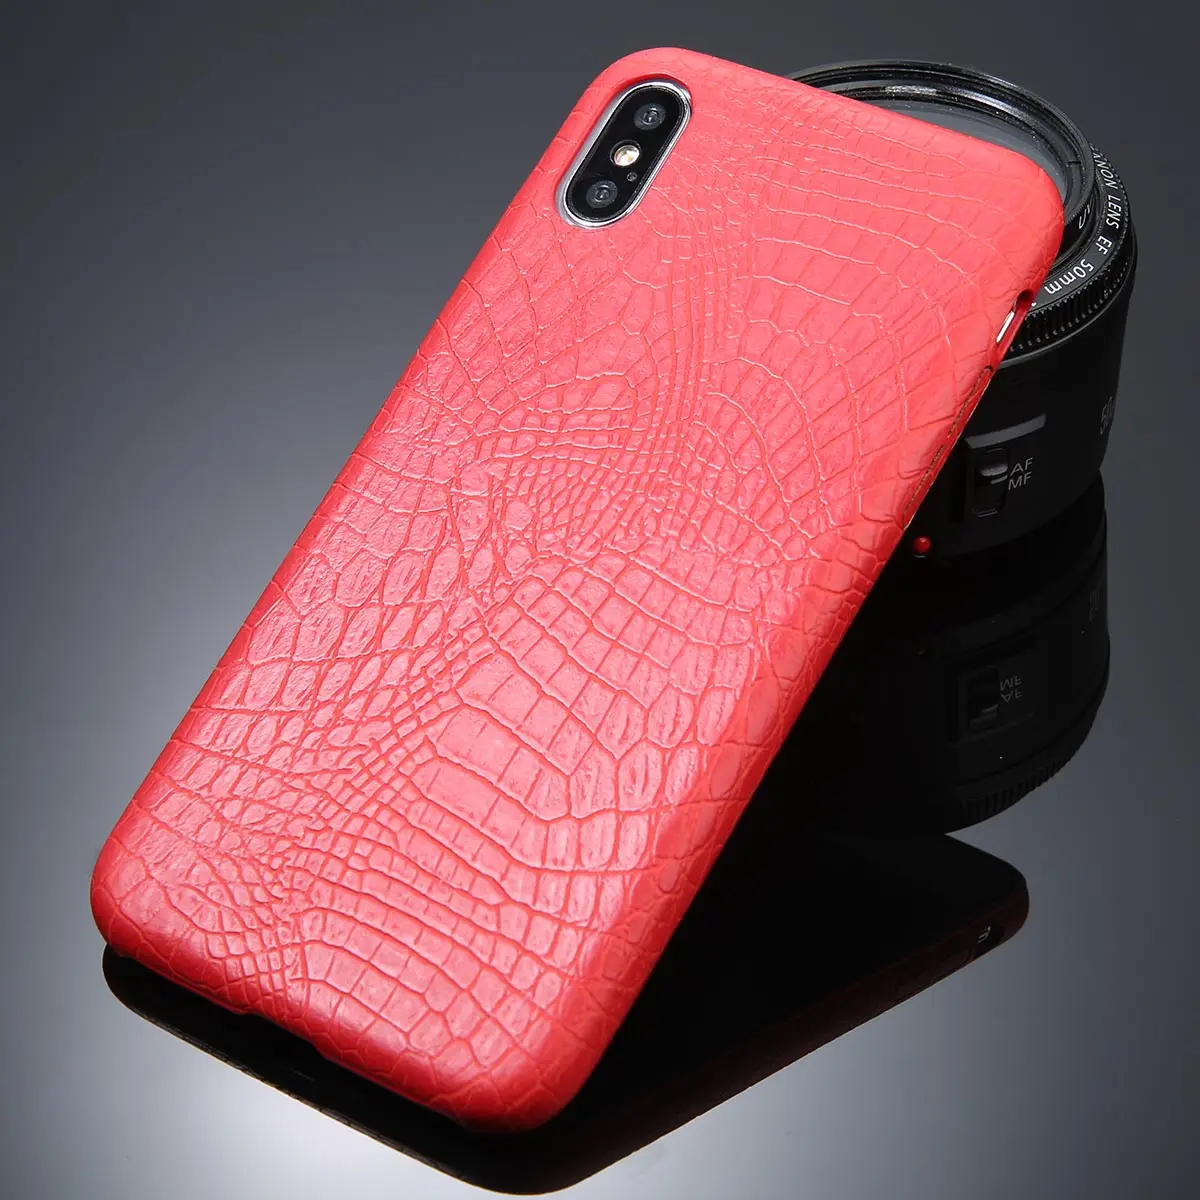 Ottwn PU крокодиловая текстура чехол для iPhone 6 7 8 Plus X XR XS Max ультра тонкие кожаные чехлы для iPhone 6 6S Plus мягкая задняя крышка - Цвет: Красный